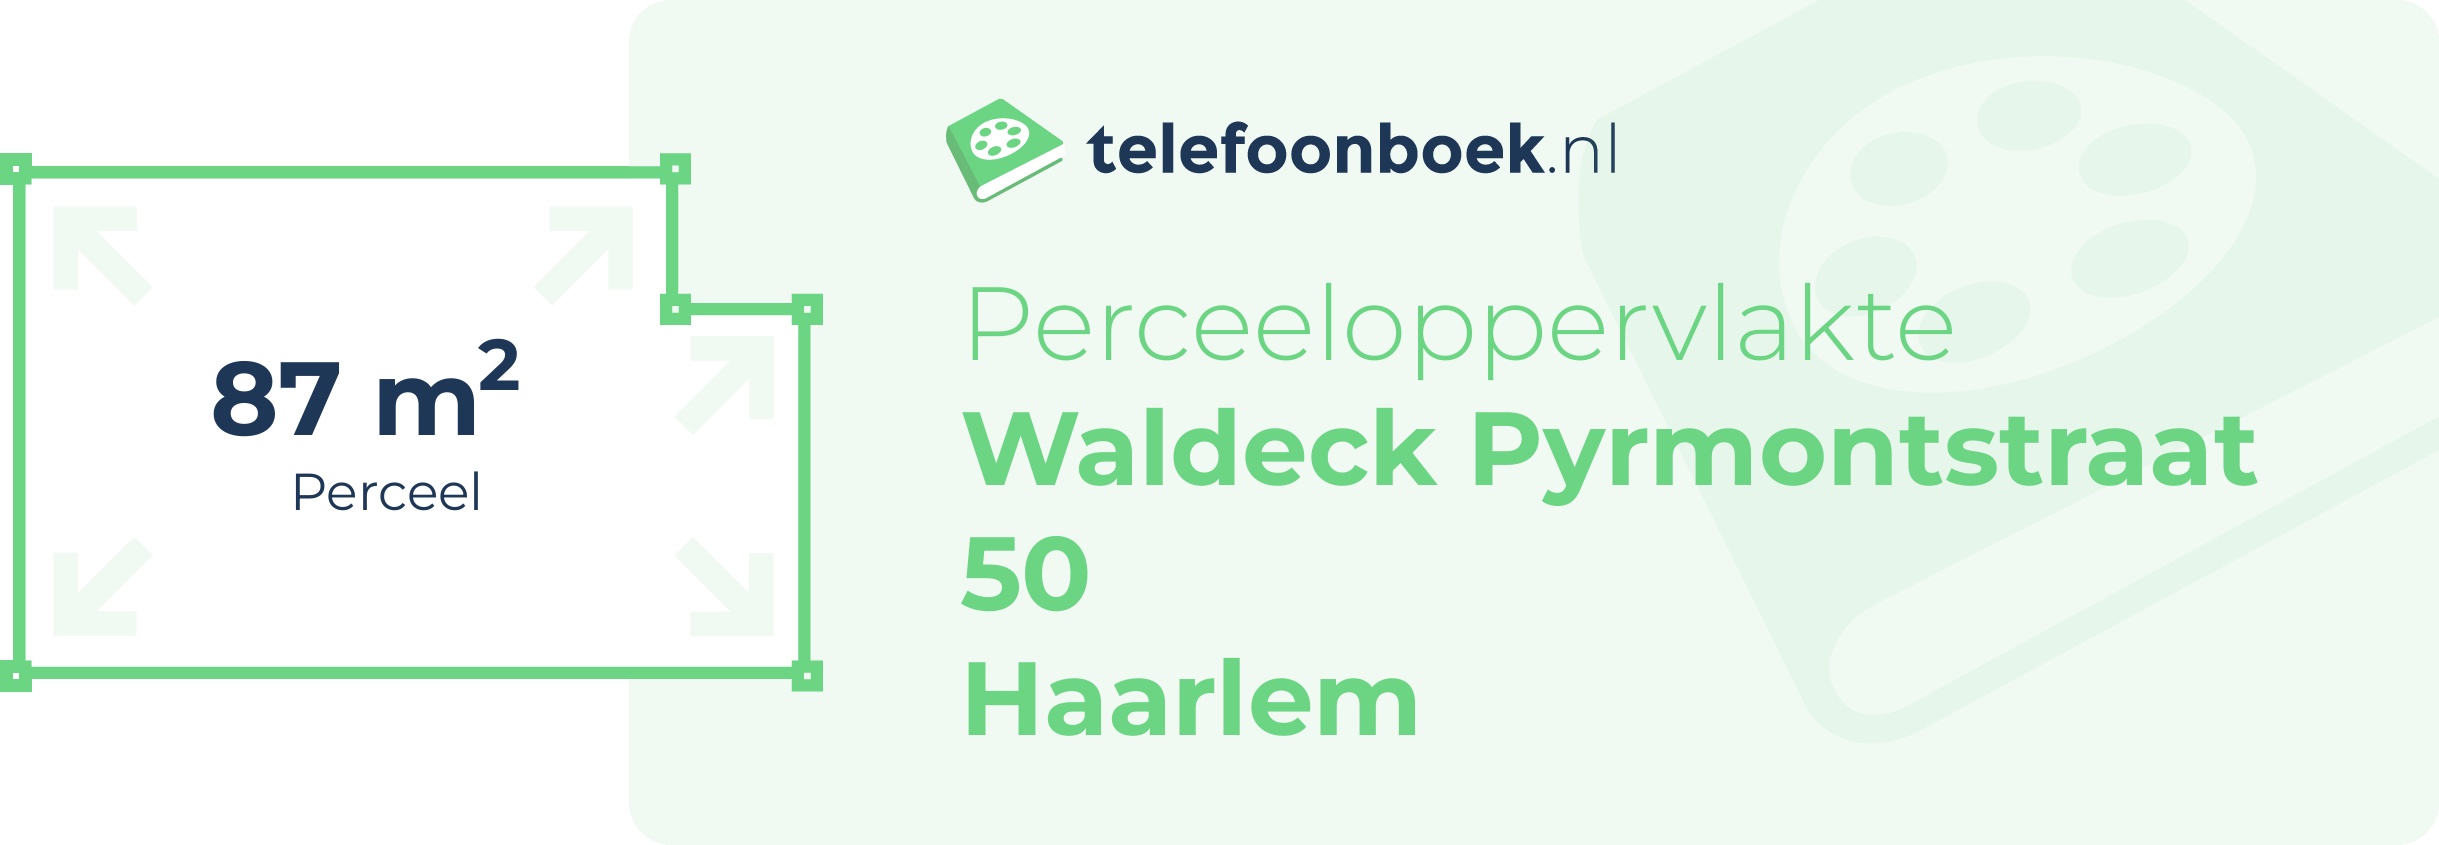 Perceeloppervlakte Waldeck Pyrmontstraat 50 Haarlem